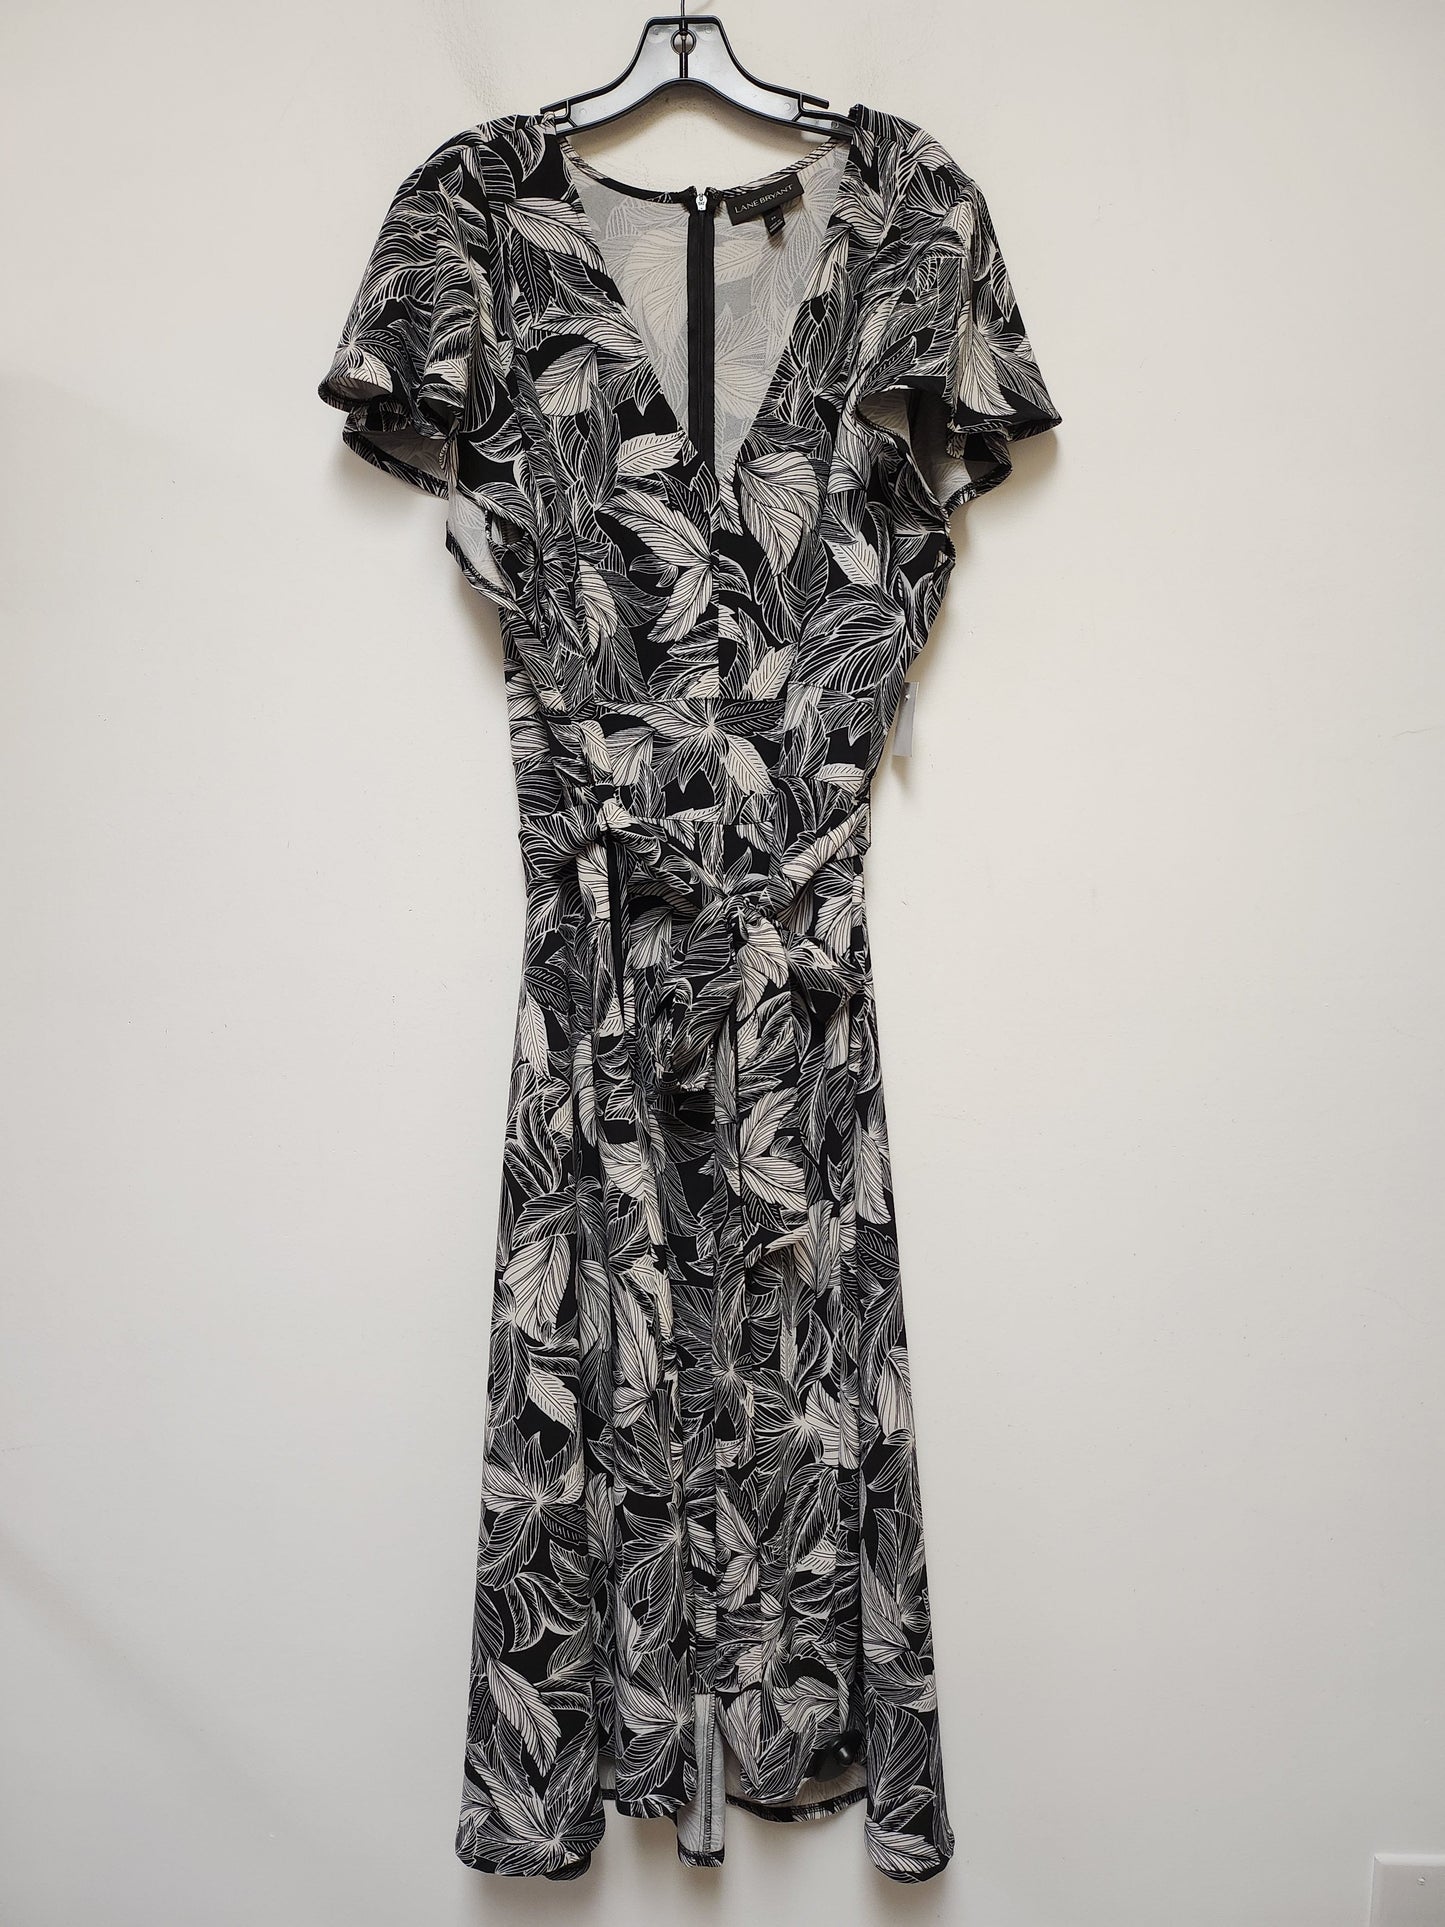 Tropical Print Dress Casual Maxi Lane Bryant, Size 3x